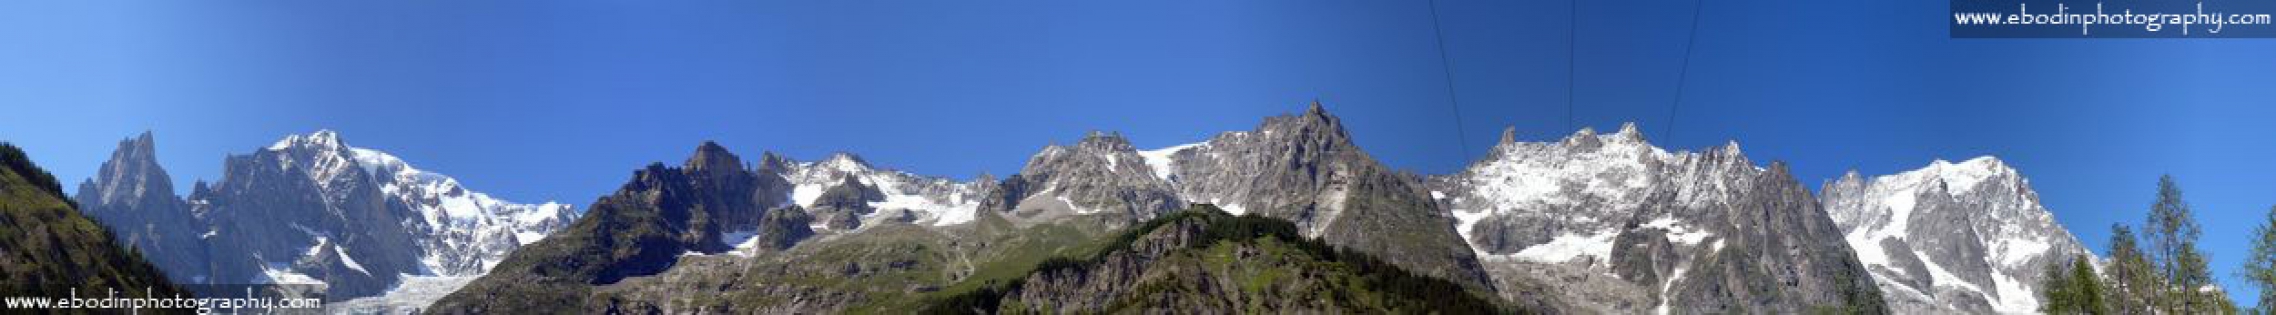 Le Mont Blanc © 2013
Le Mont Blanc et les Grandes Jorasses coté Italien